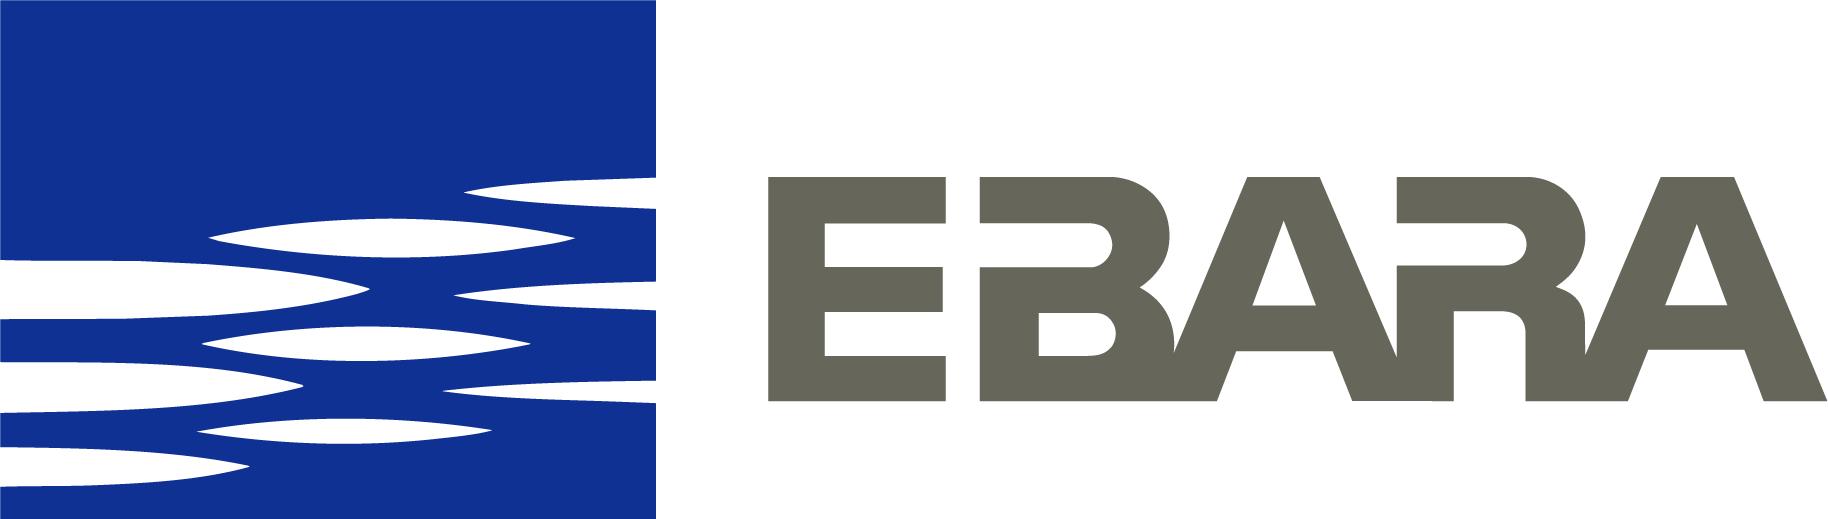 Ebara Pompa Logo